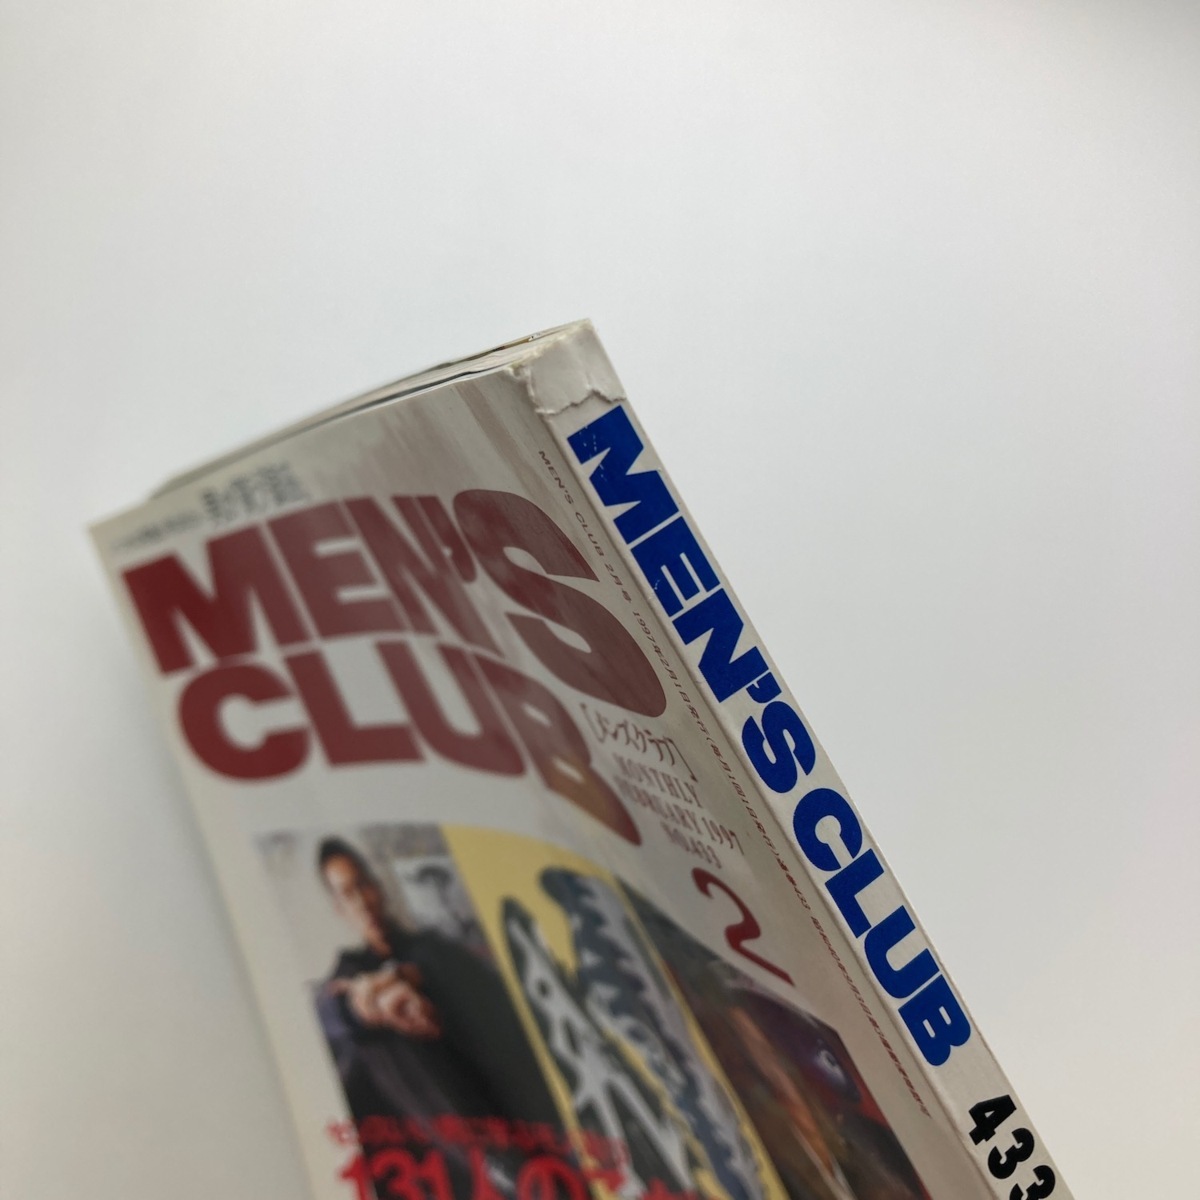 MEN\'S CLUB мужской Club специальный выпуск :131 человек. предубеждение мой стандартный 1997 год 2 месяц No.433 < Yu-Mail >